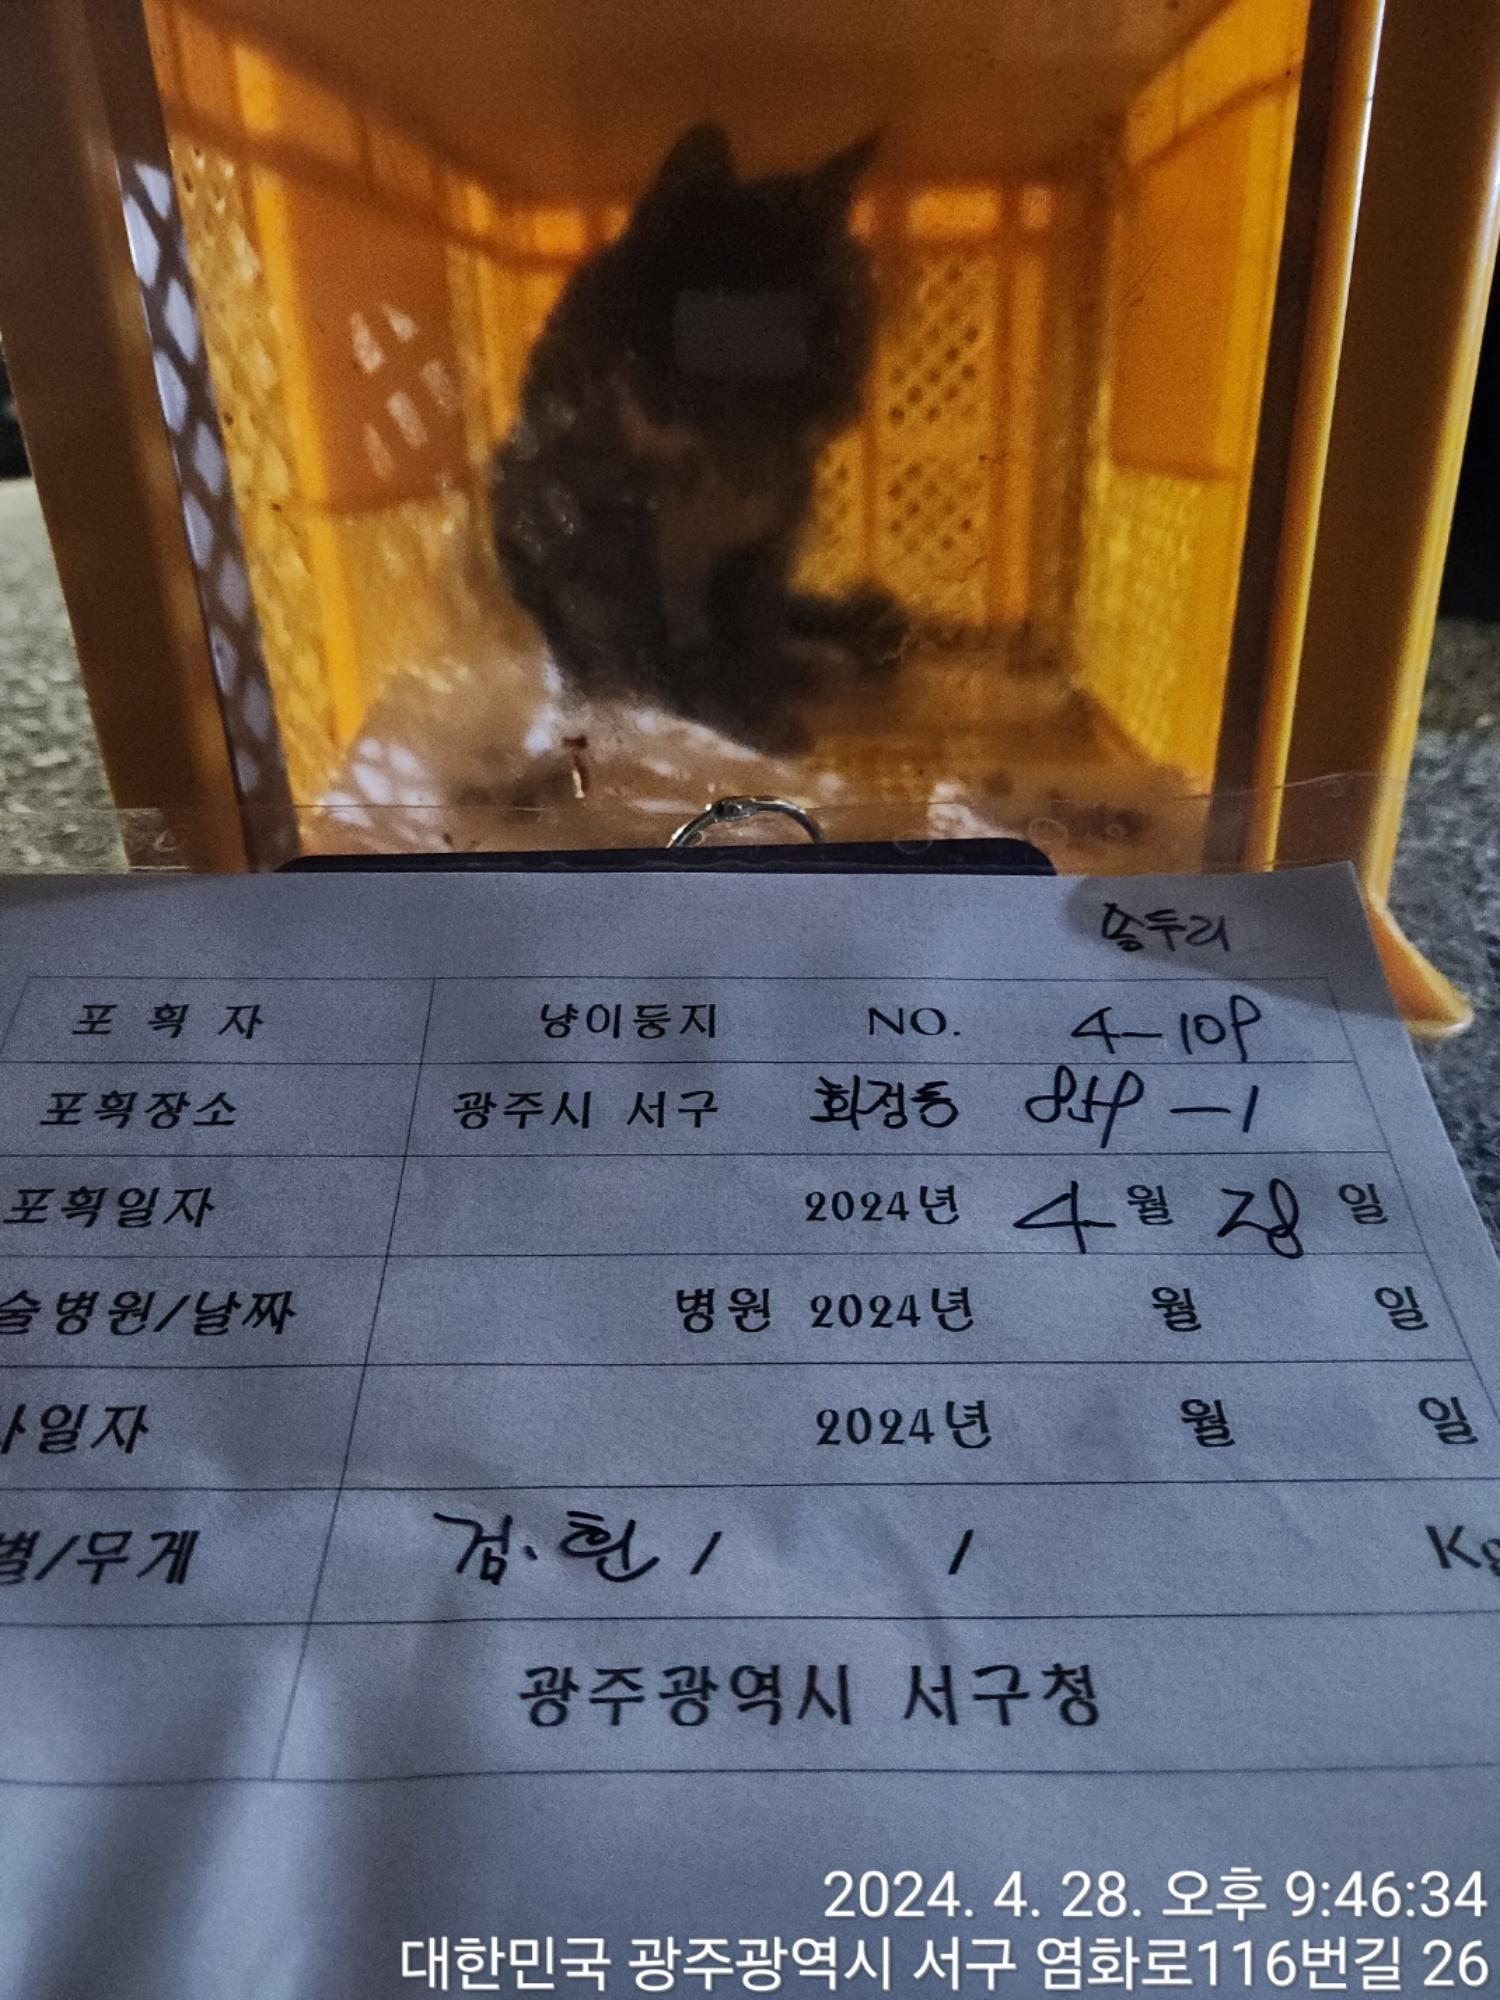 보호중동물사진 공고번호-광주-서구-2024-00189